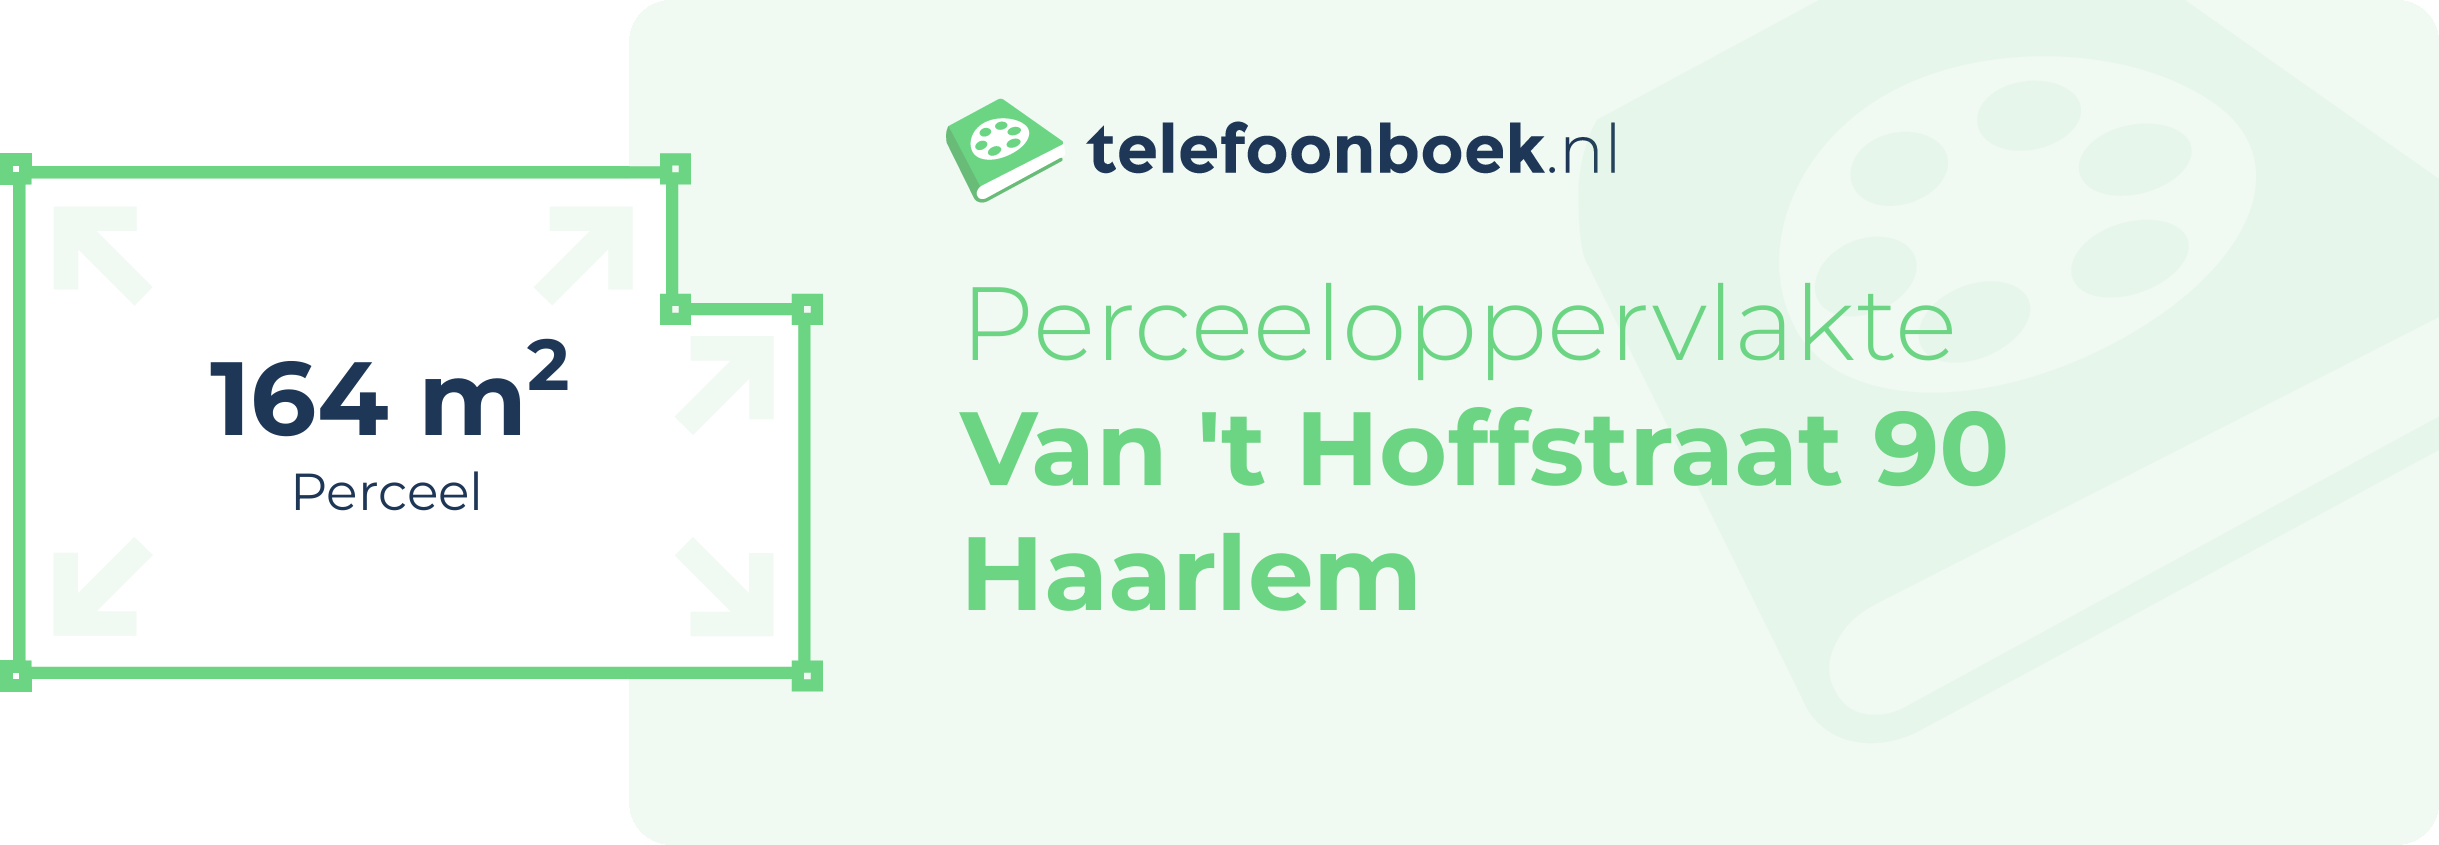 Perceeloppervlakte Van 't Hoffstraat 90 Haarlem